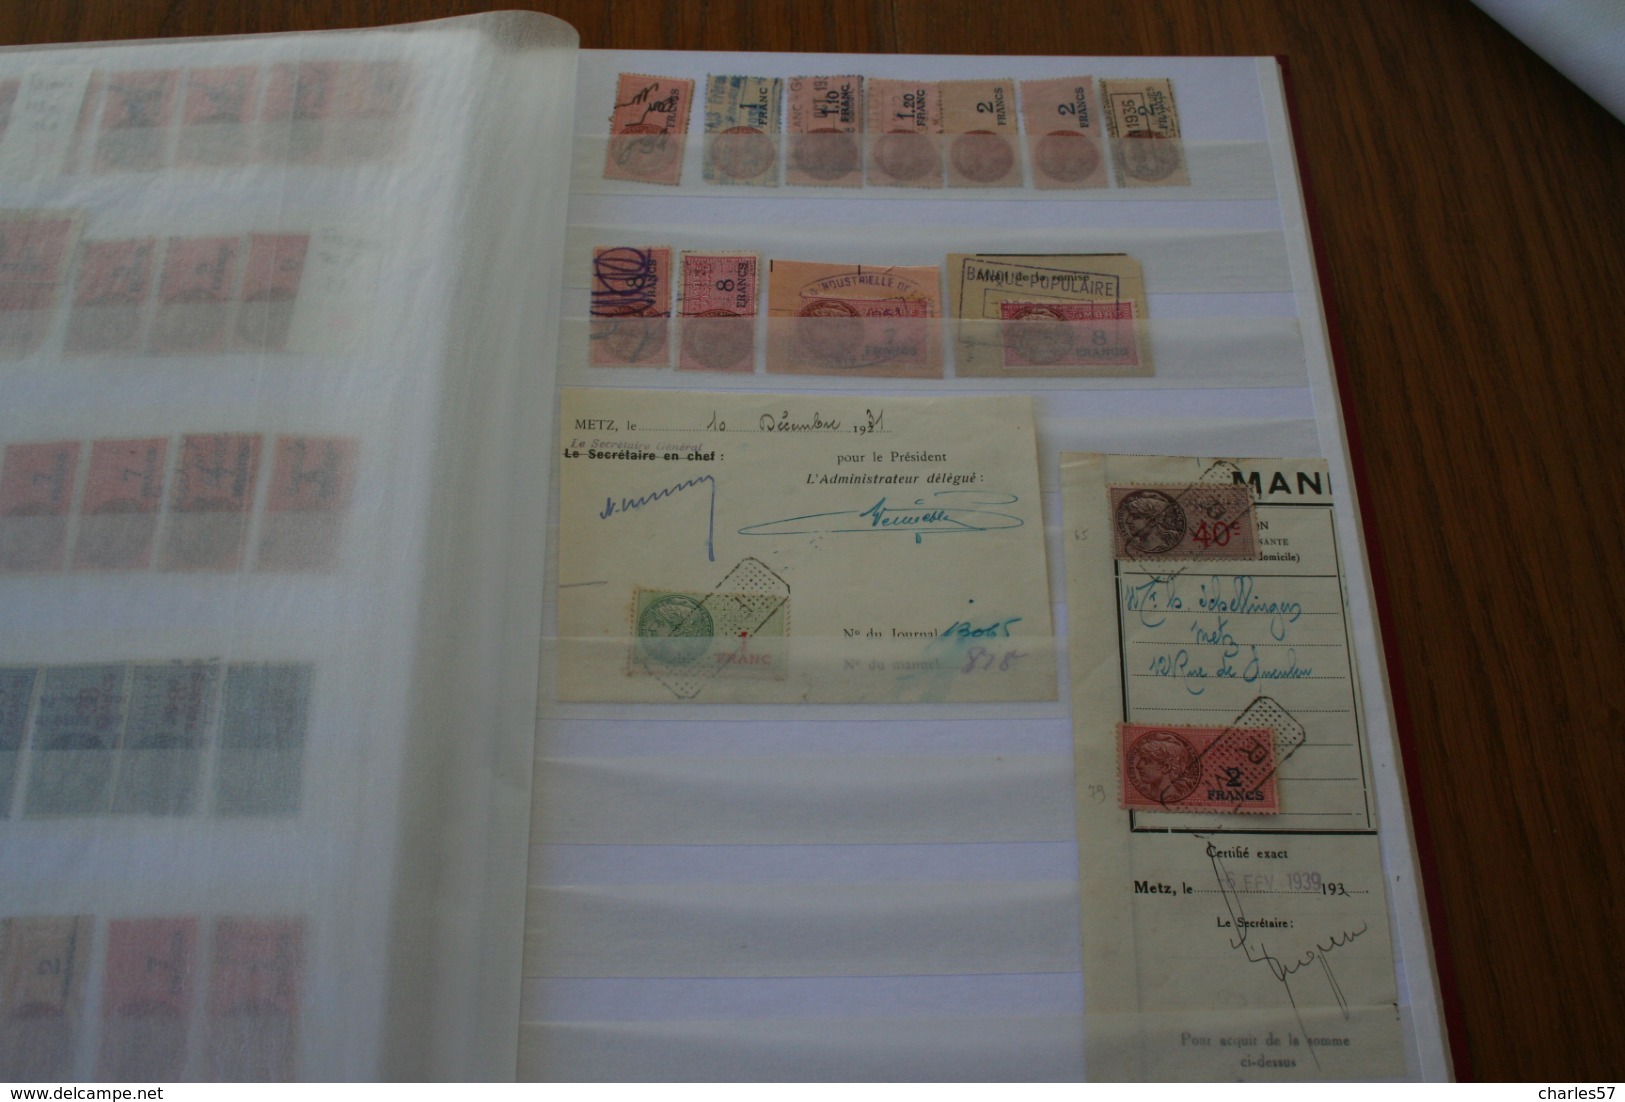 Très joli ensemble et très varié , 7 pages de timbres fiscaux